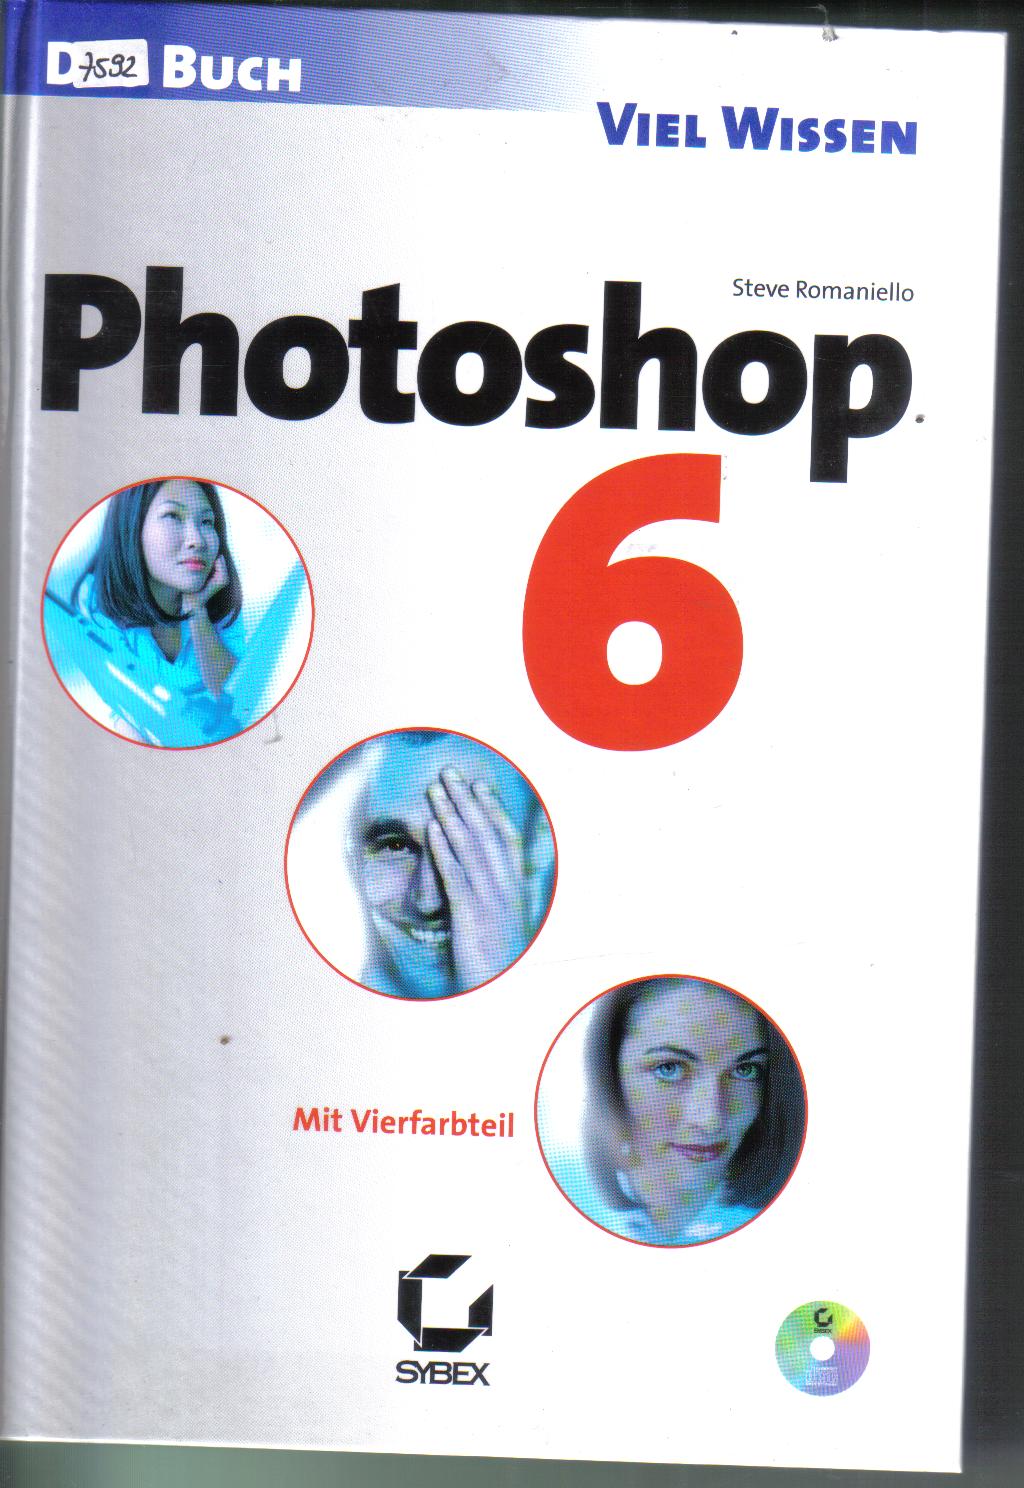 Photoshop 6Sybex Verlag